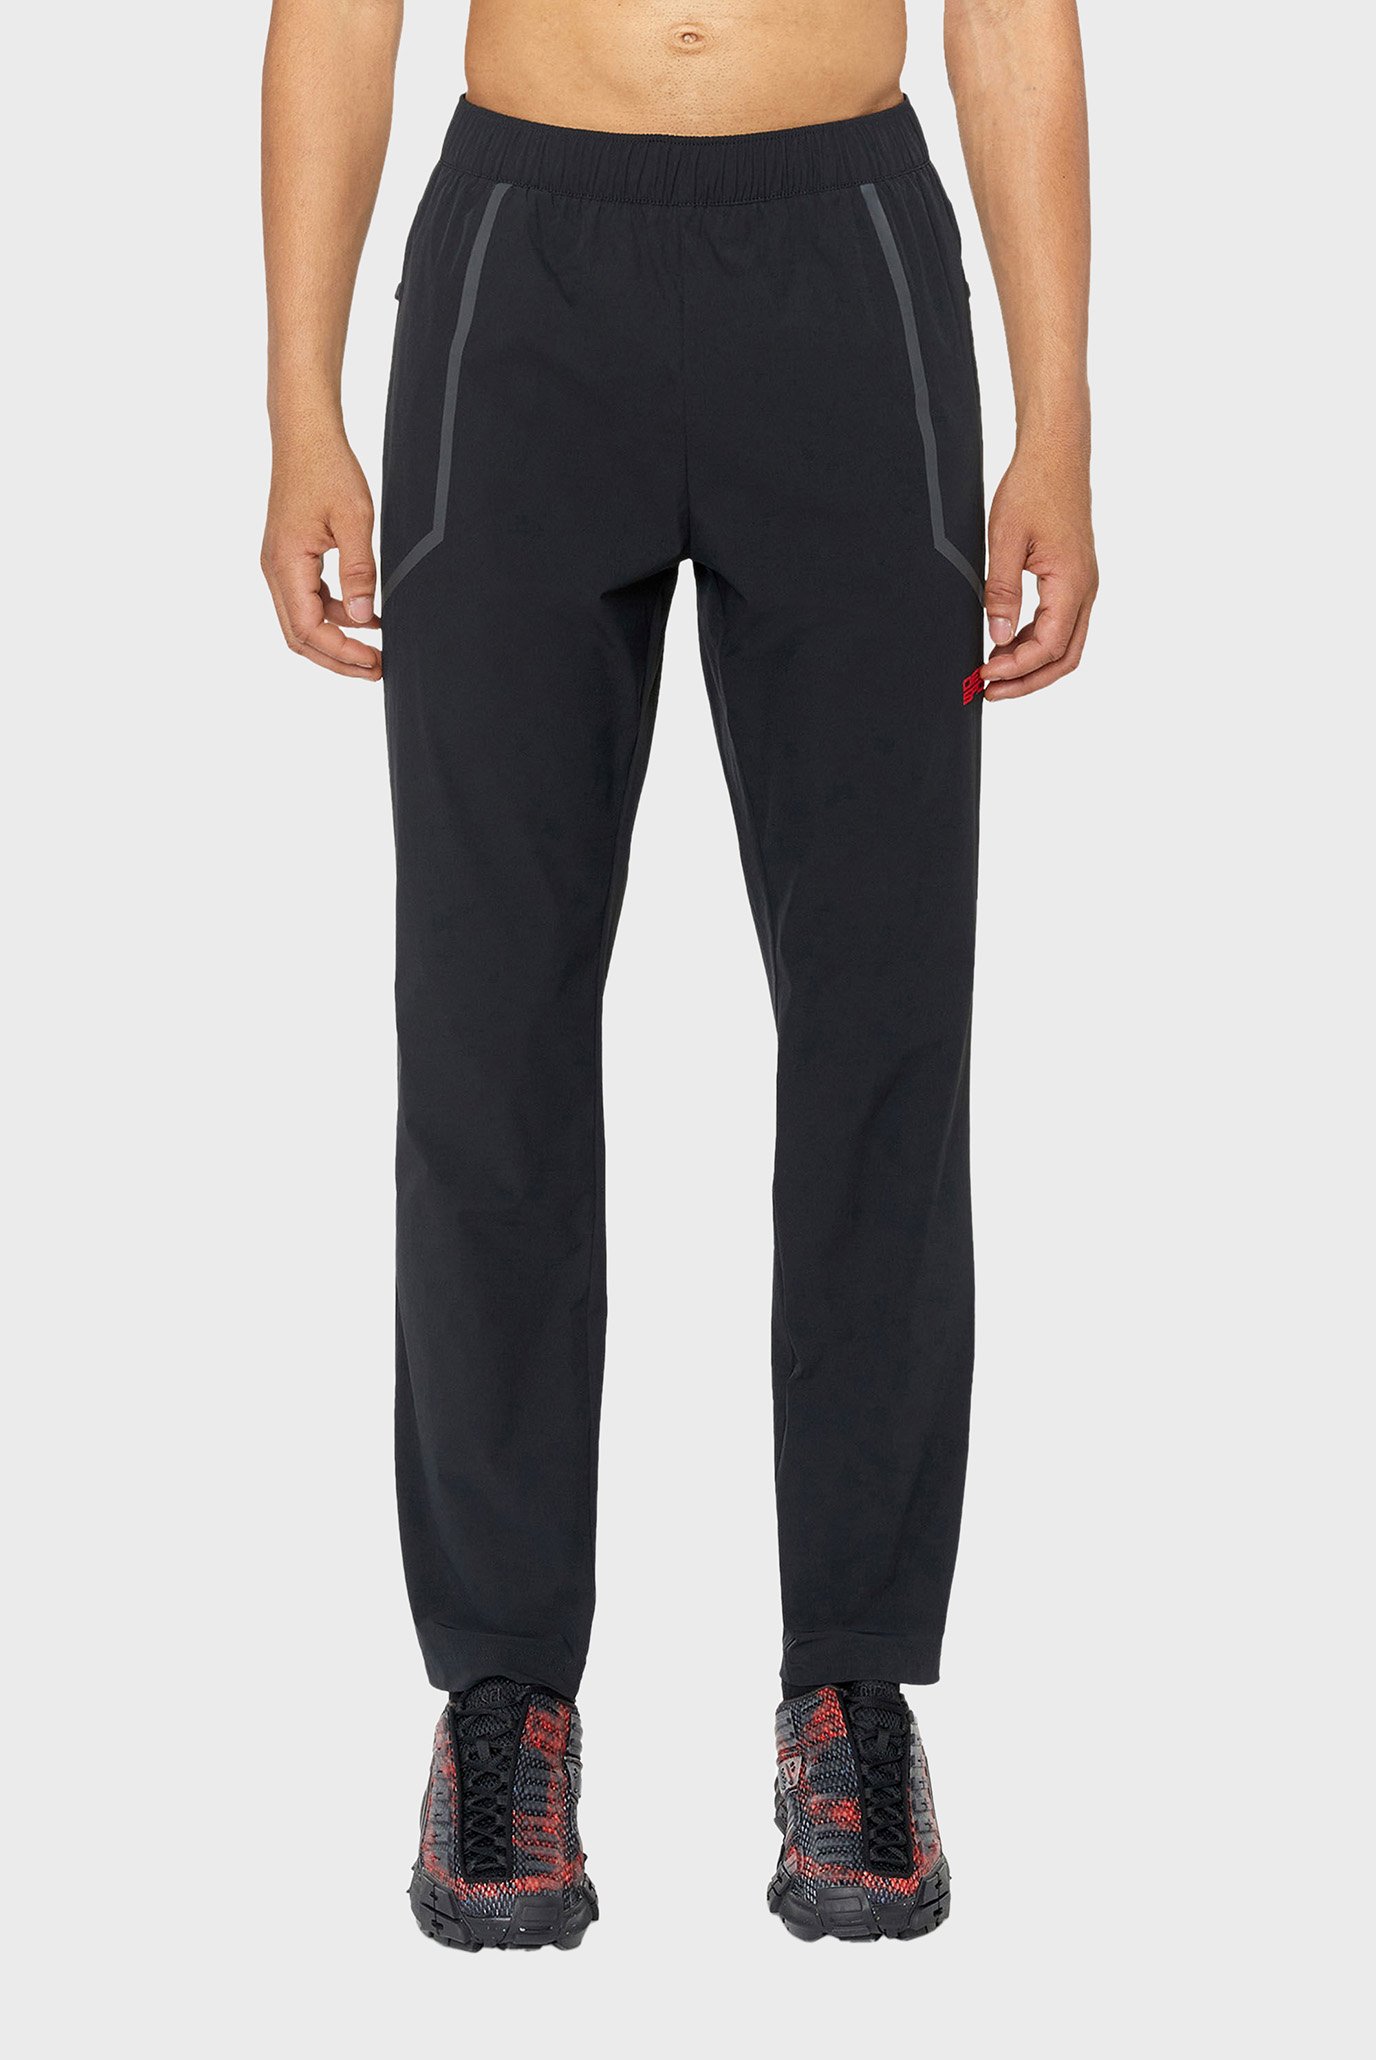 Мужские черные спортивные брюки AMWB-KEAN-WT16 1